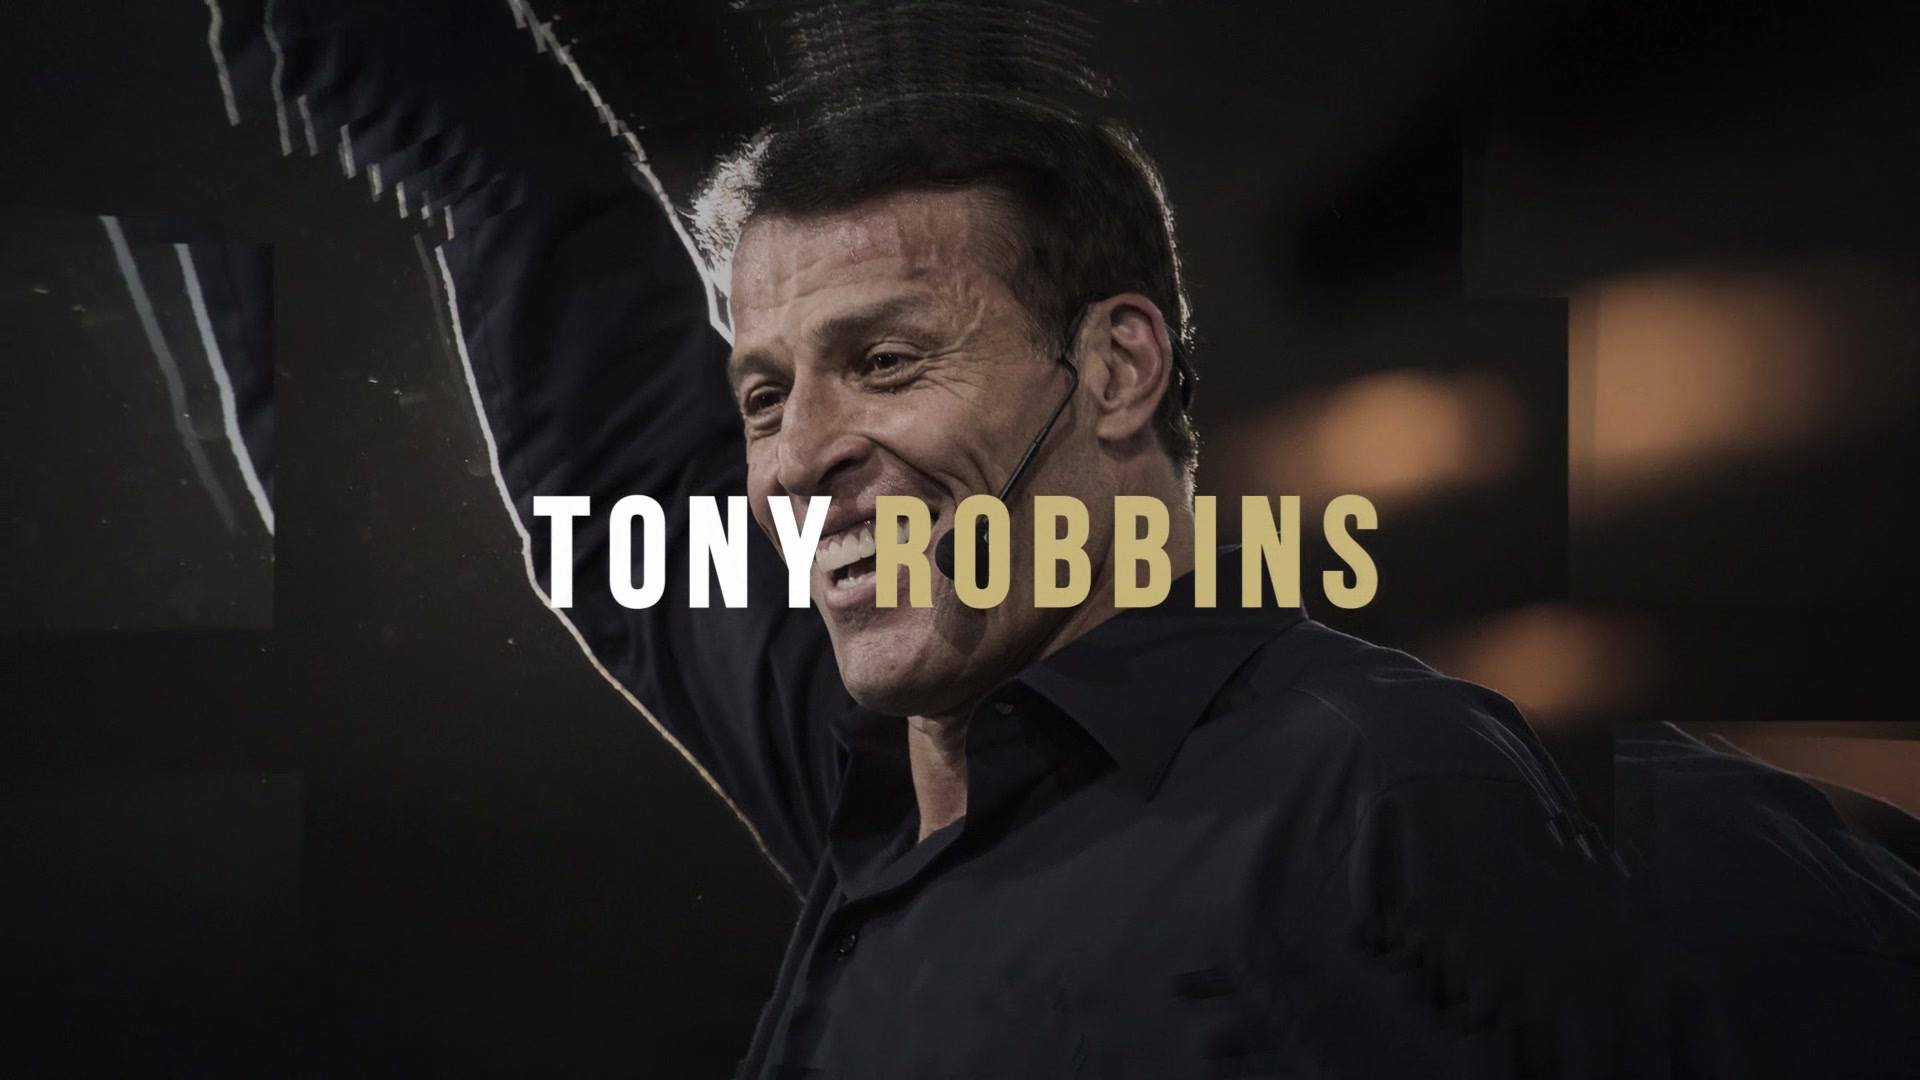 Tony Robbins Dean Graziosi Russell Brunson Go Live April 30th